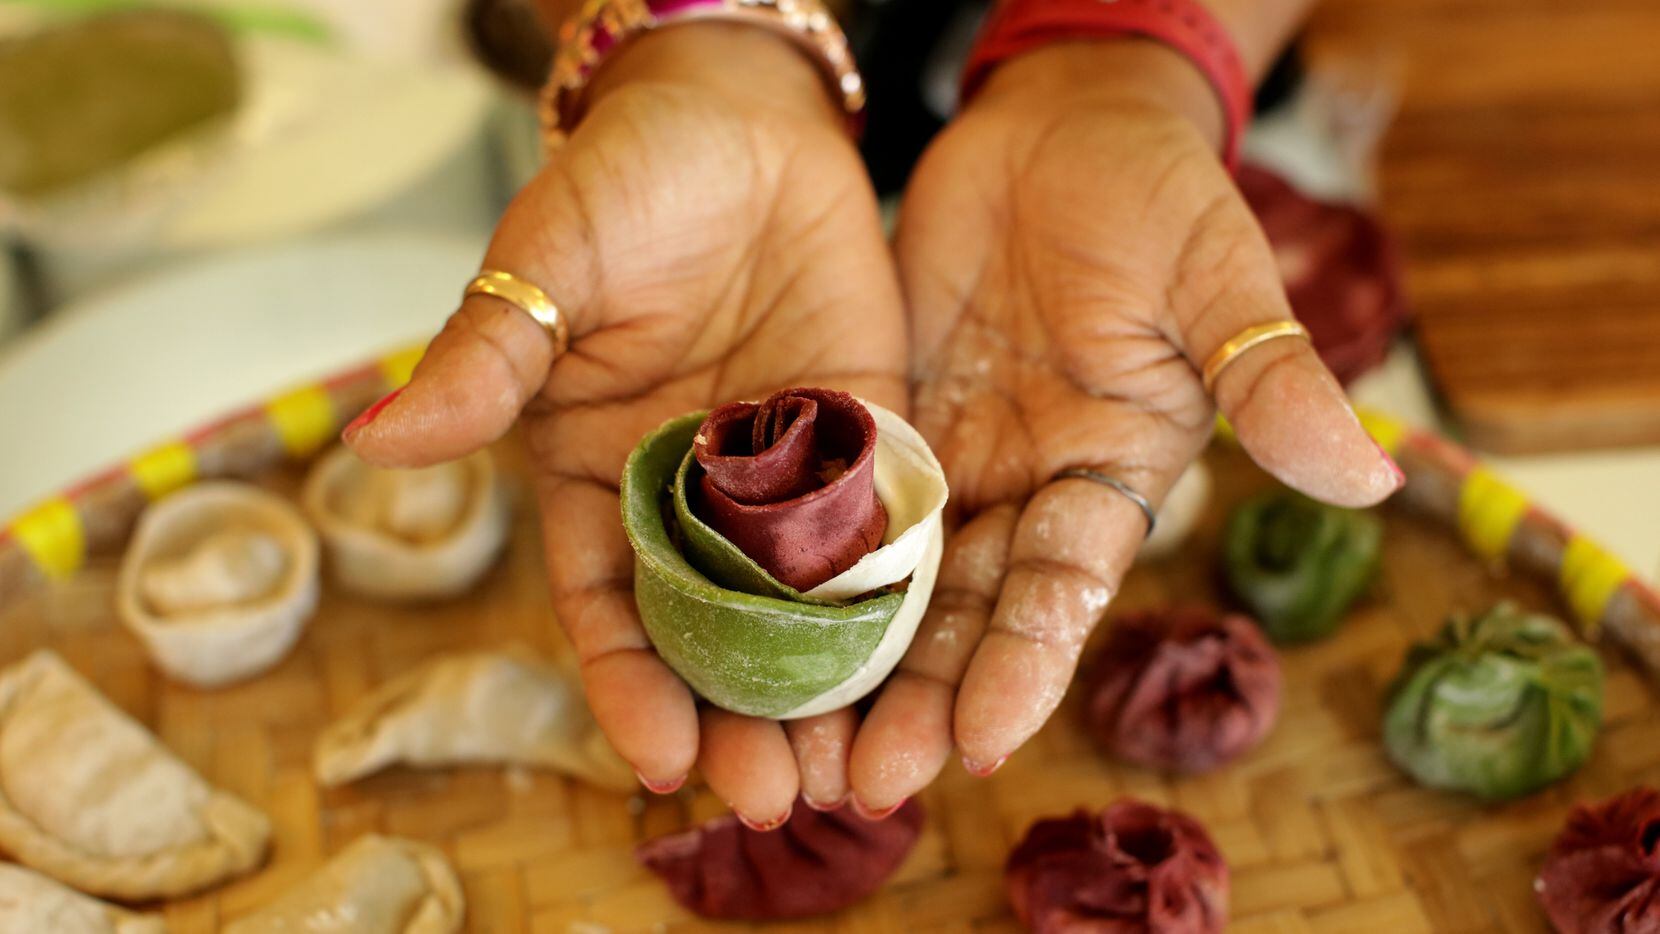 Minu Amatya with Momo Shack Dumplings holds a Nepali dumpling shaped like a rose.